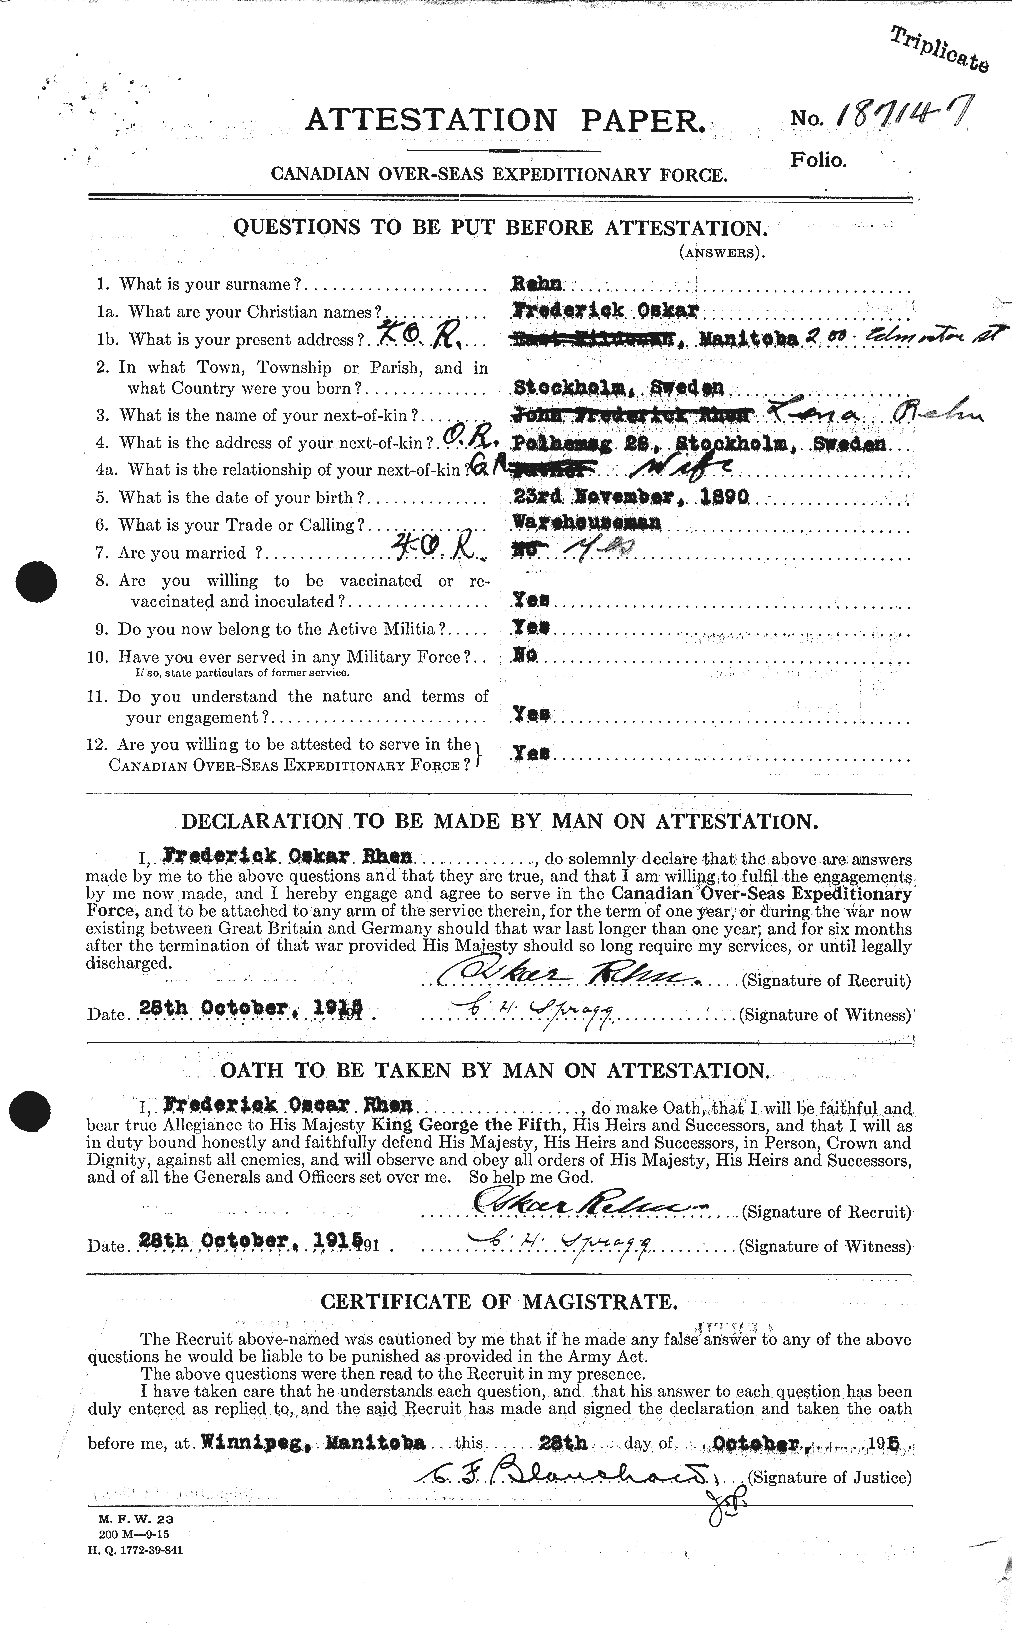 Dossiers du Personnel de la Première Guerre mondiale - CEC 597698a